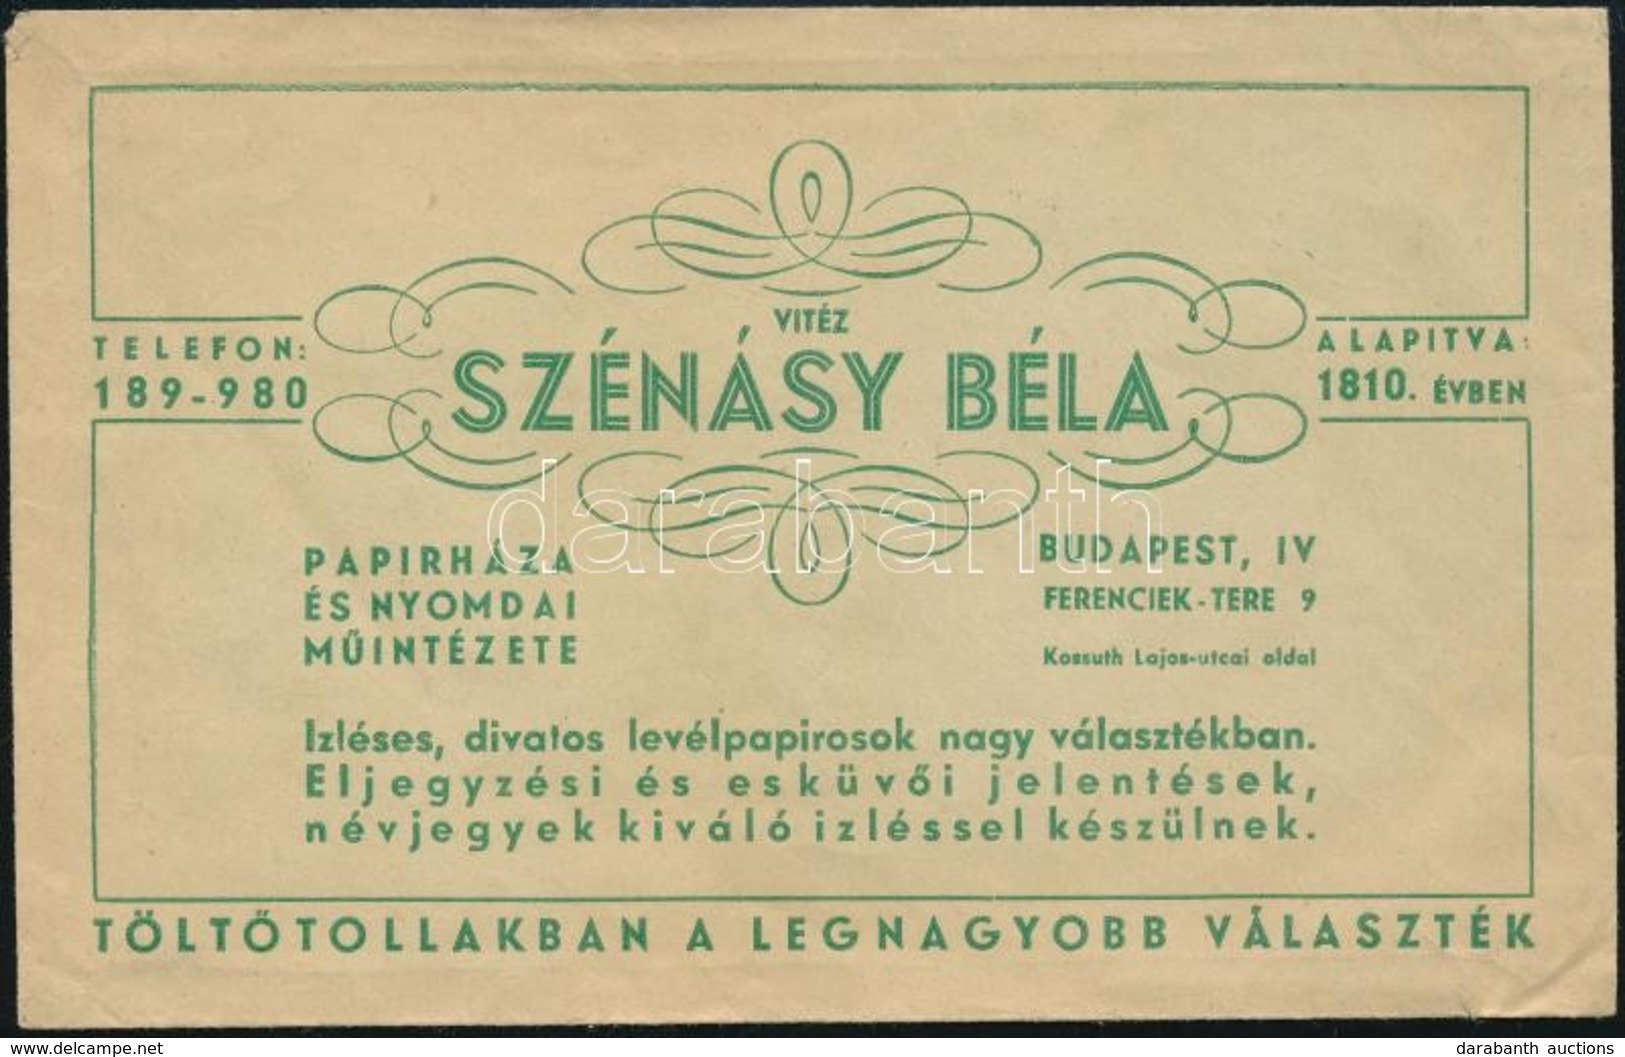 Vitéz Szénásy Béla Papírháza és Nyomdai Műintézete Budapest IV. Papírboríték - Pubblicitari